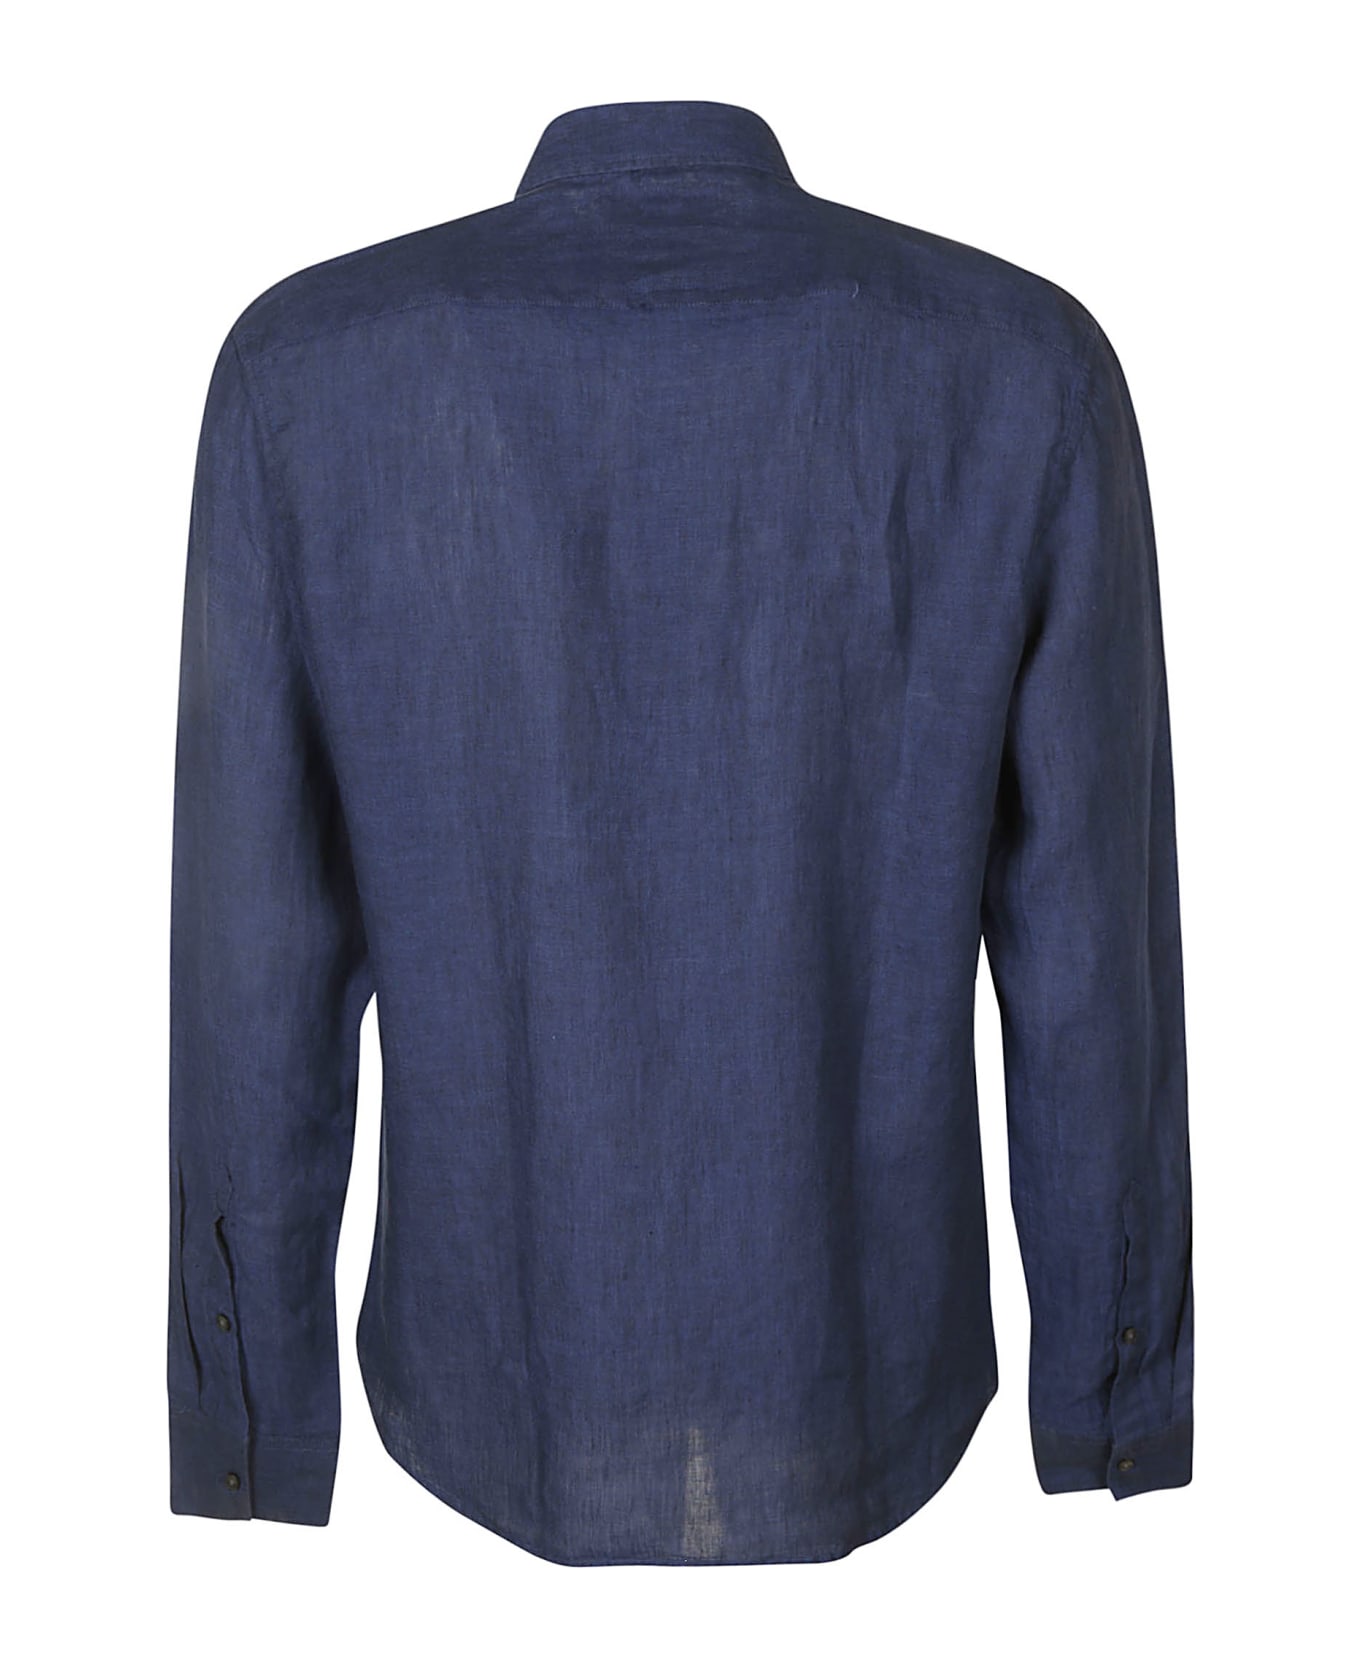 Michael Kors Round Hem Plain Shirt - Blue